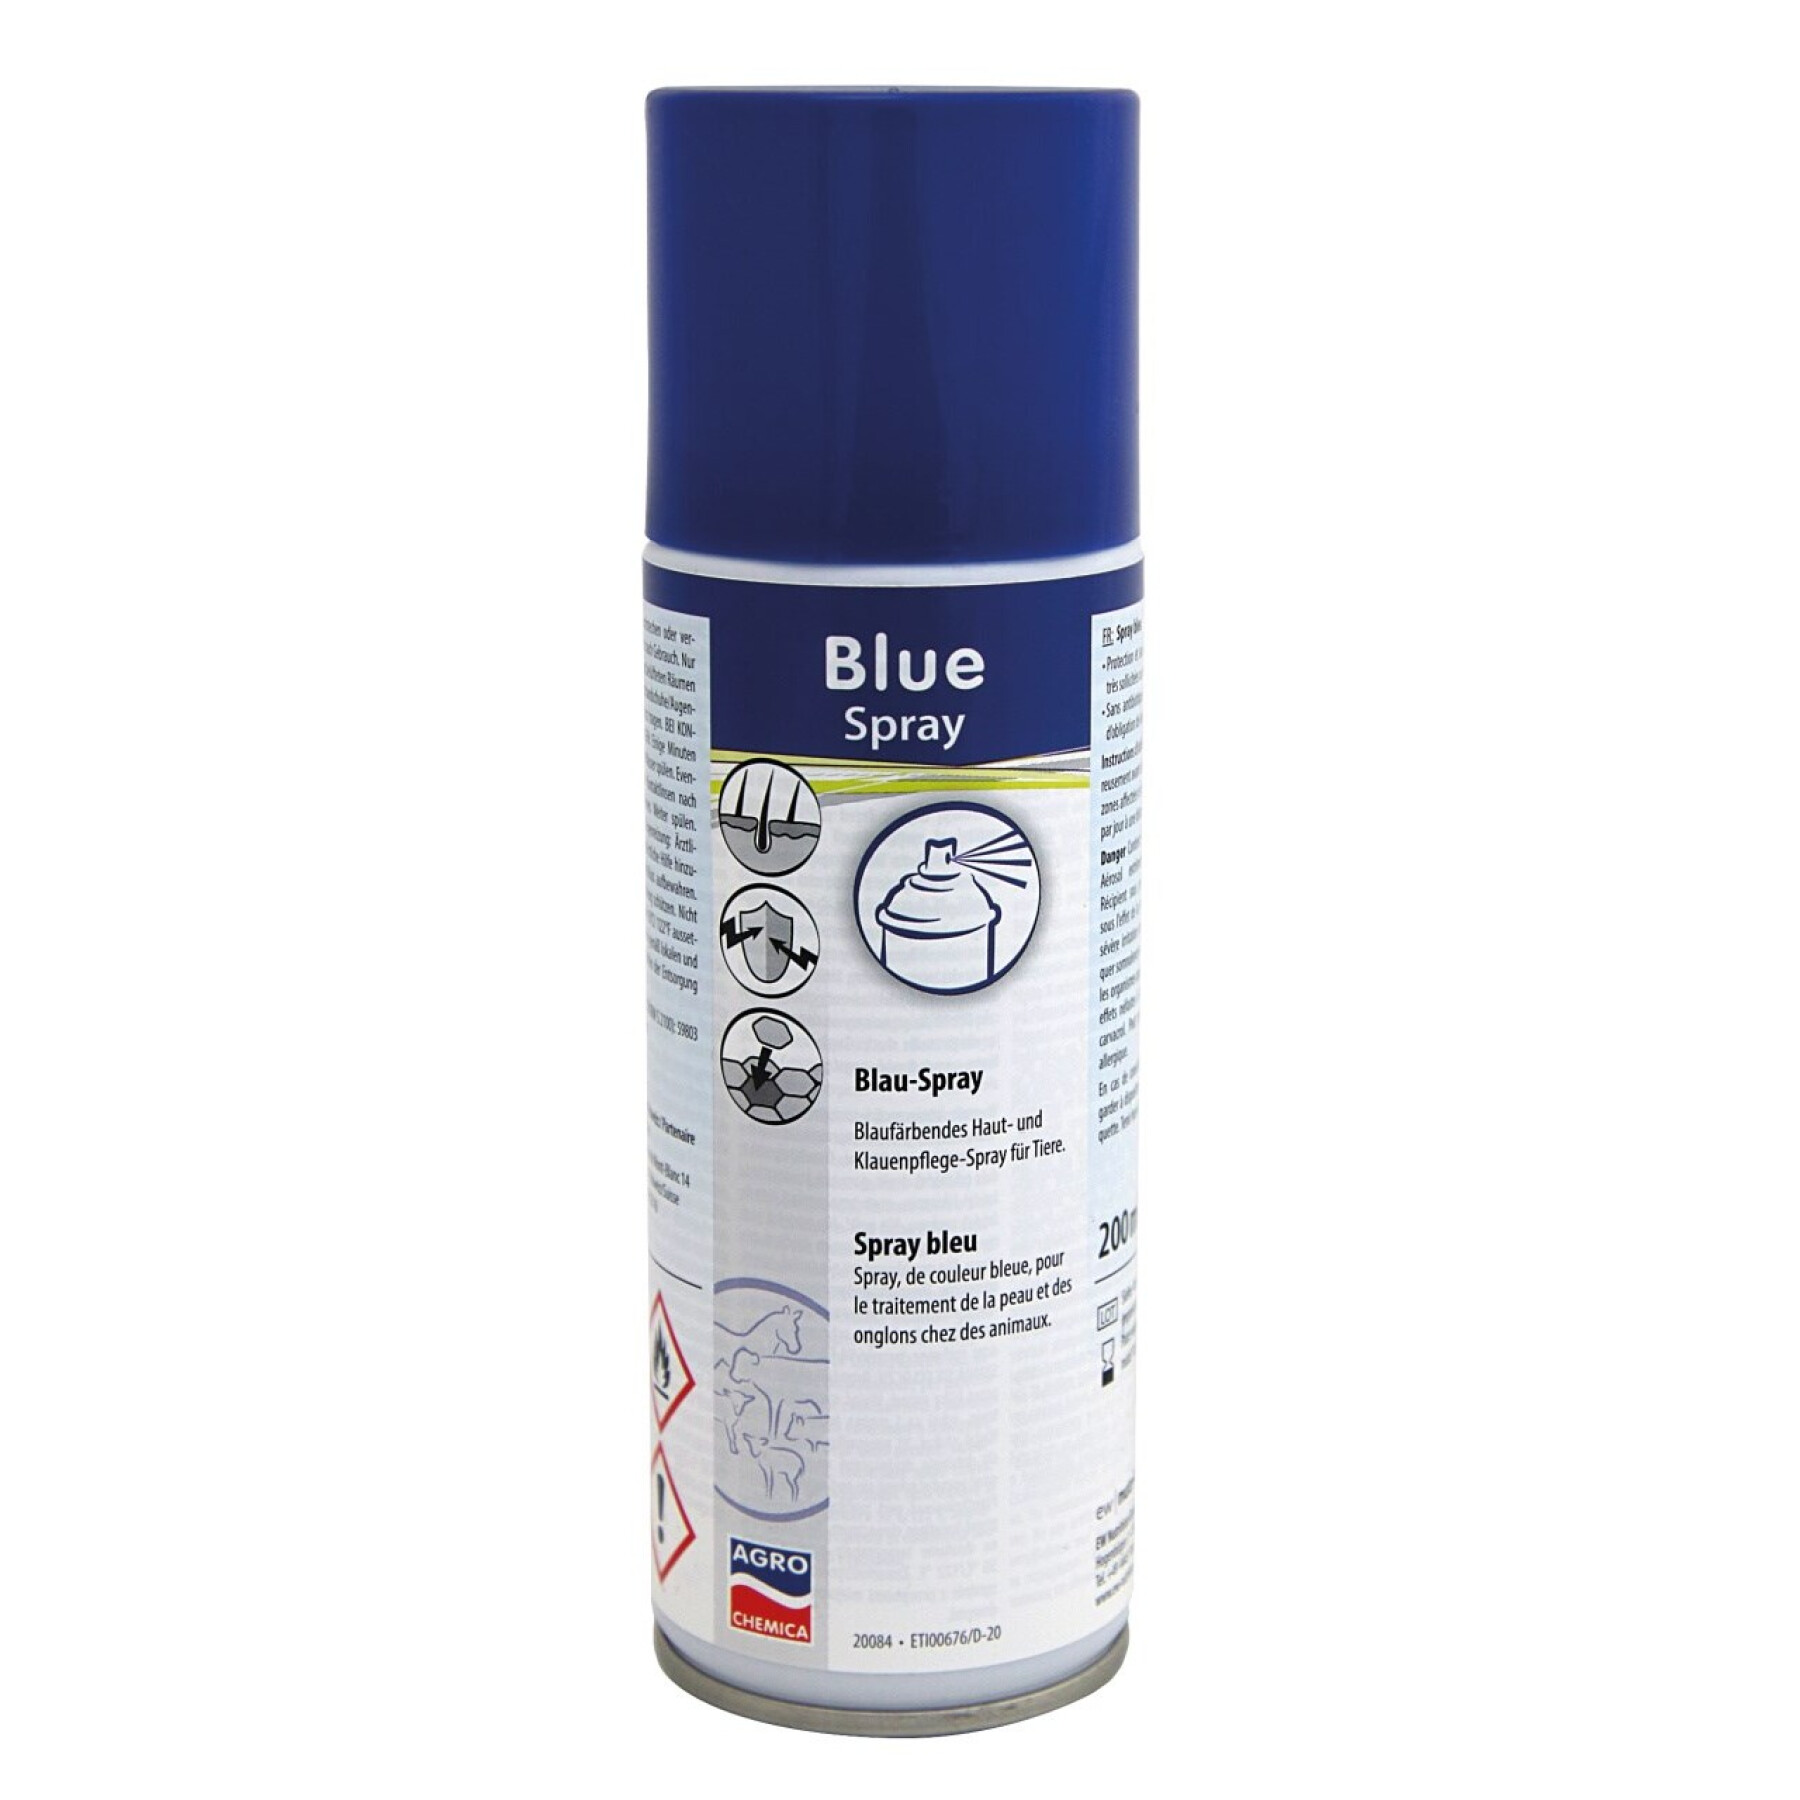 Blue spray aerosol Kerbl